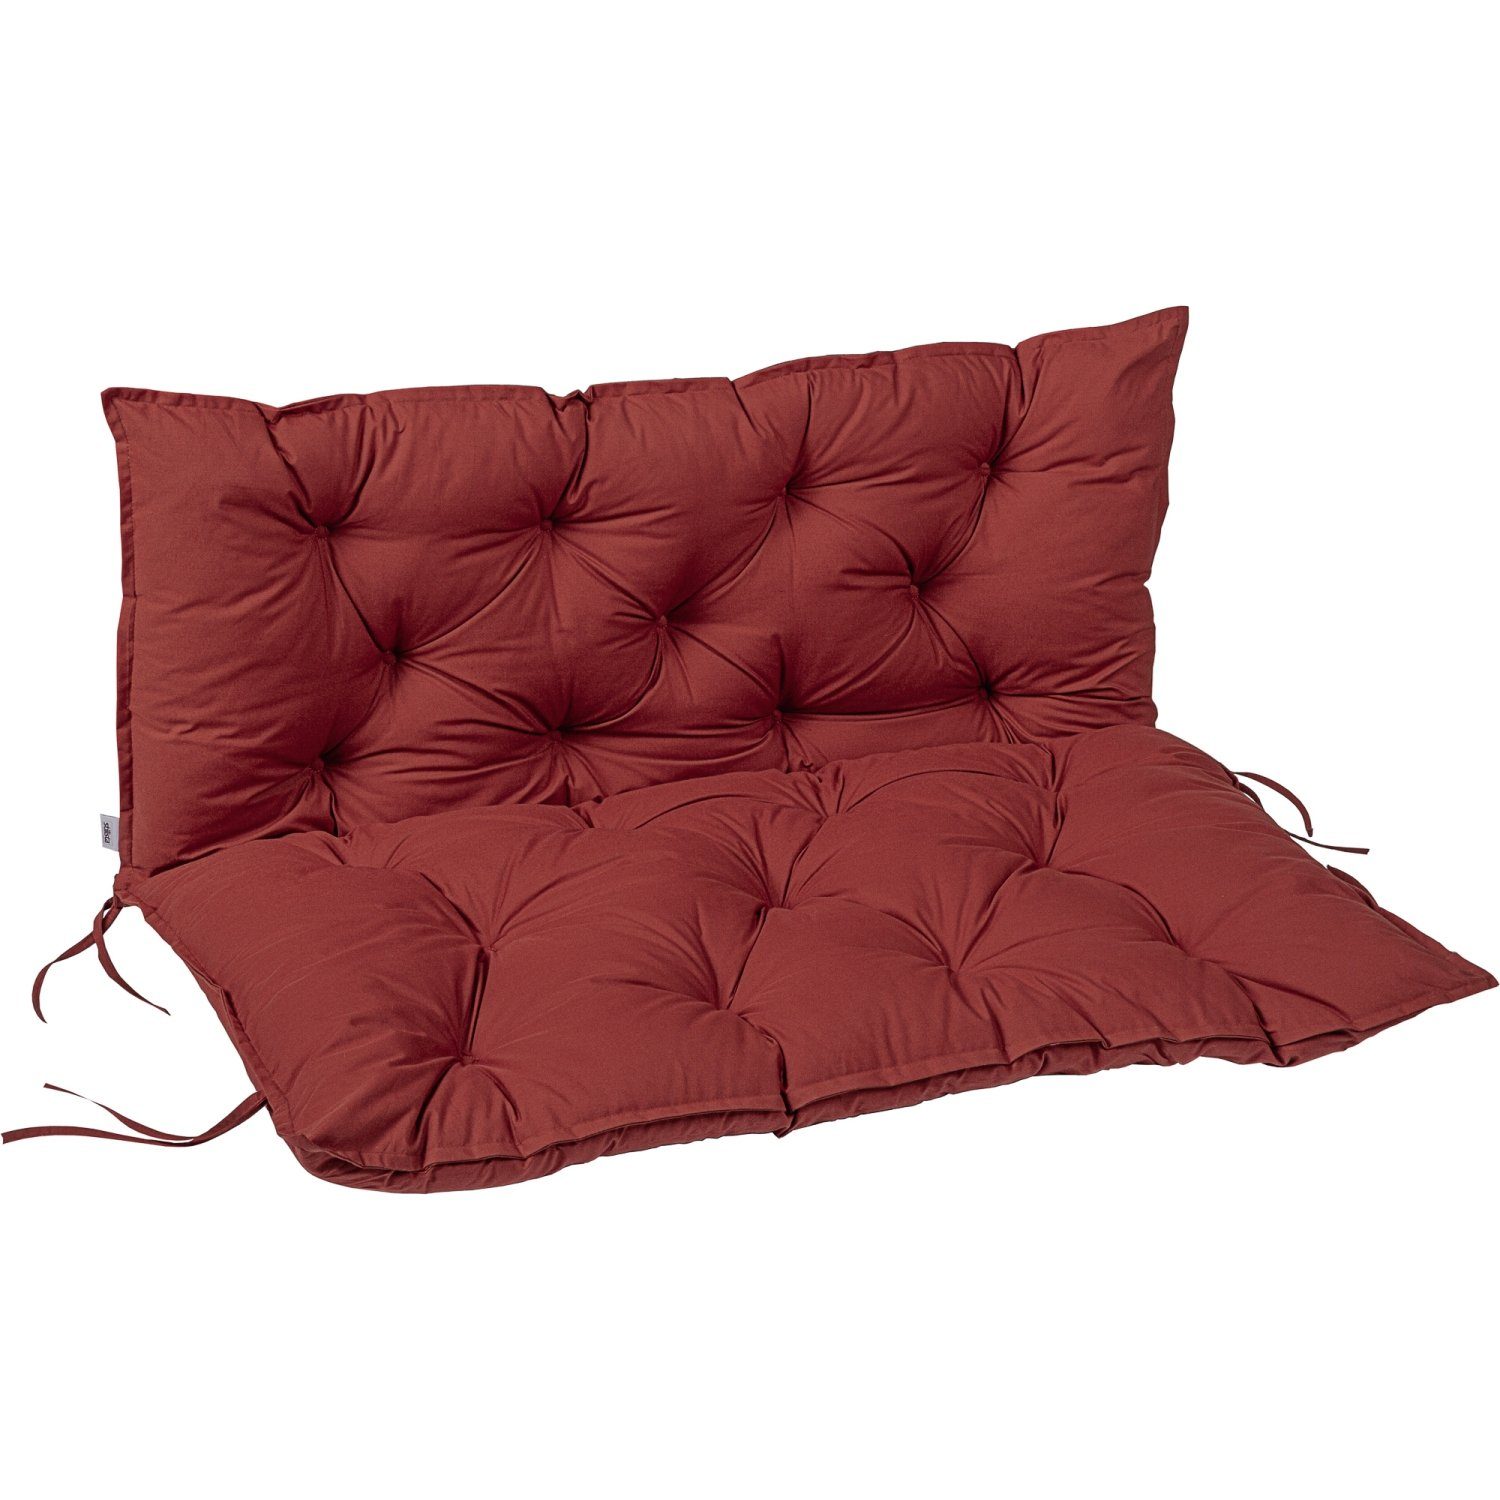 Stuhlkissen Sitzkissen Dekokissen Stuhlauflage Sitzauflage Braun Rot 50x50 cm 